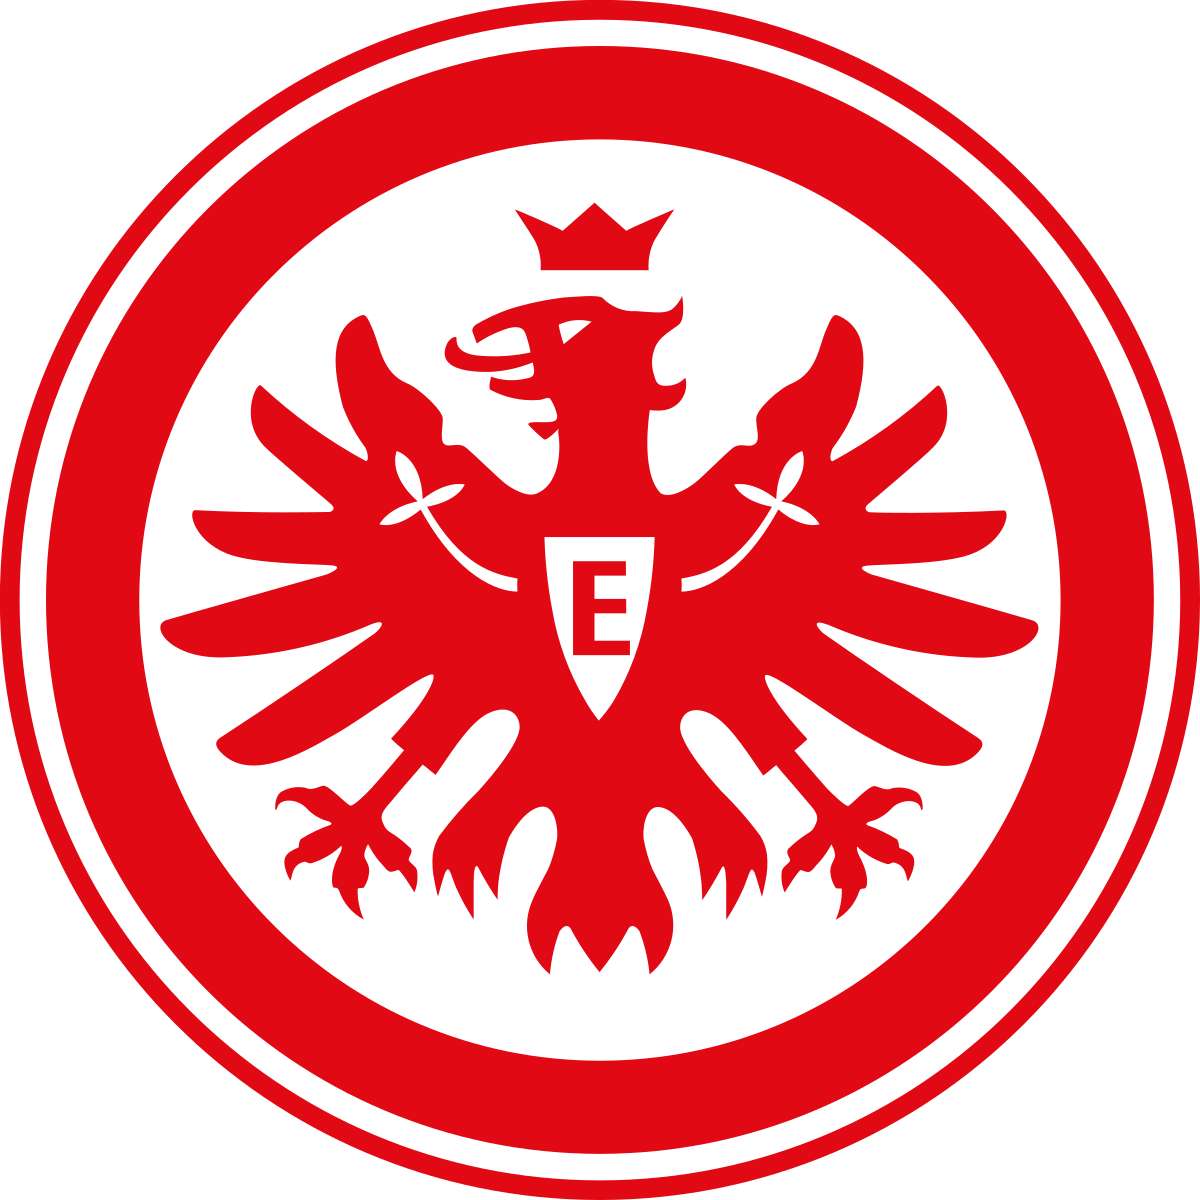 La Copa Dallas, el Eintracht Frankfurt, de Alemania aparecerán mañana en la comunidad